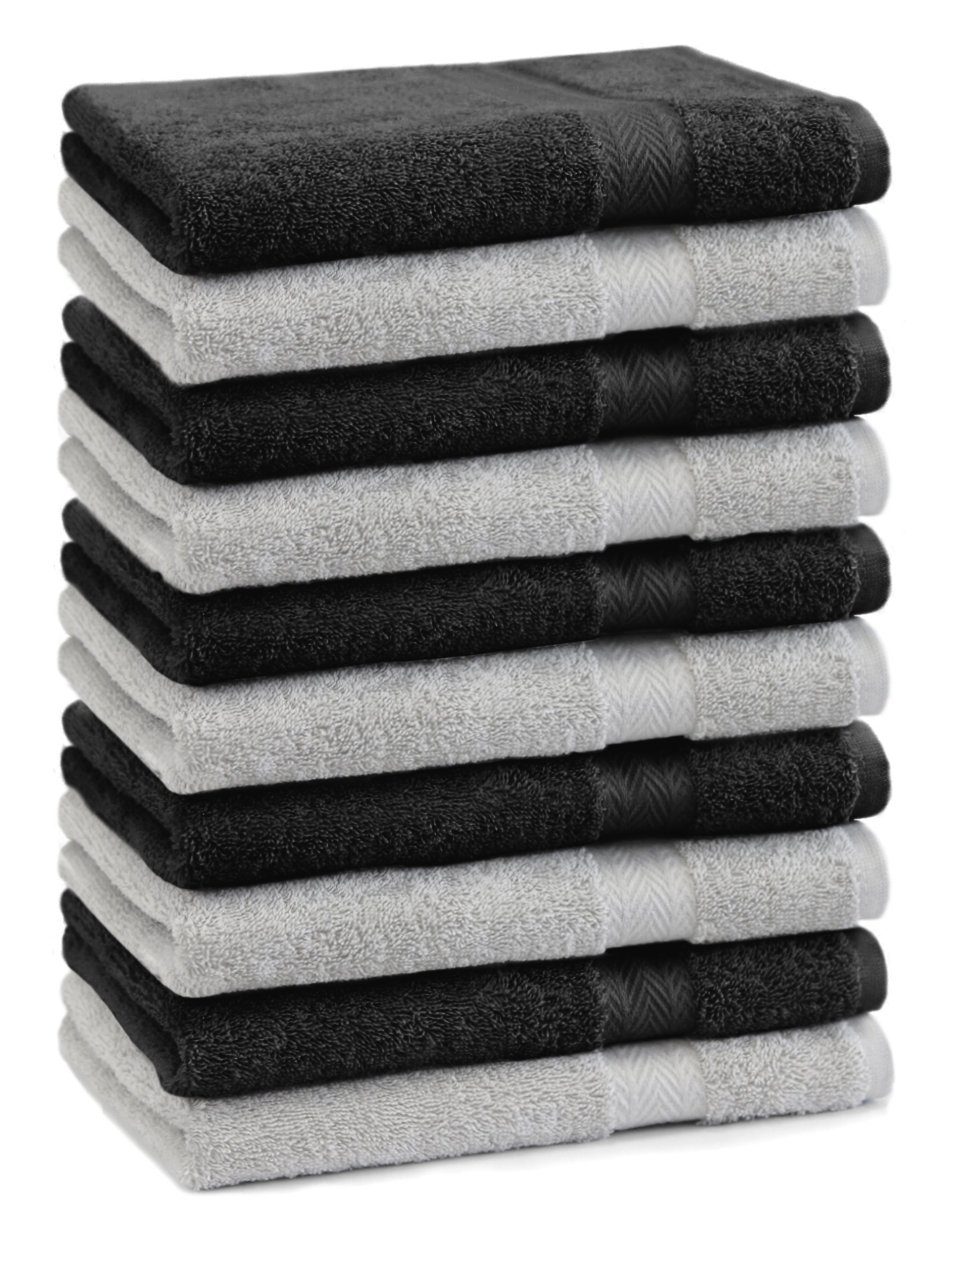 Betz Gästehandtücher 10 Stück Gästehandtücher Premium 100% Baumwolle Gästetuch-Set 30x50 cm Farbe silbergrau und schwarz, 100% Baumwolle